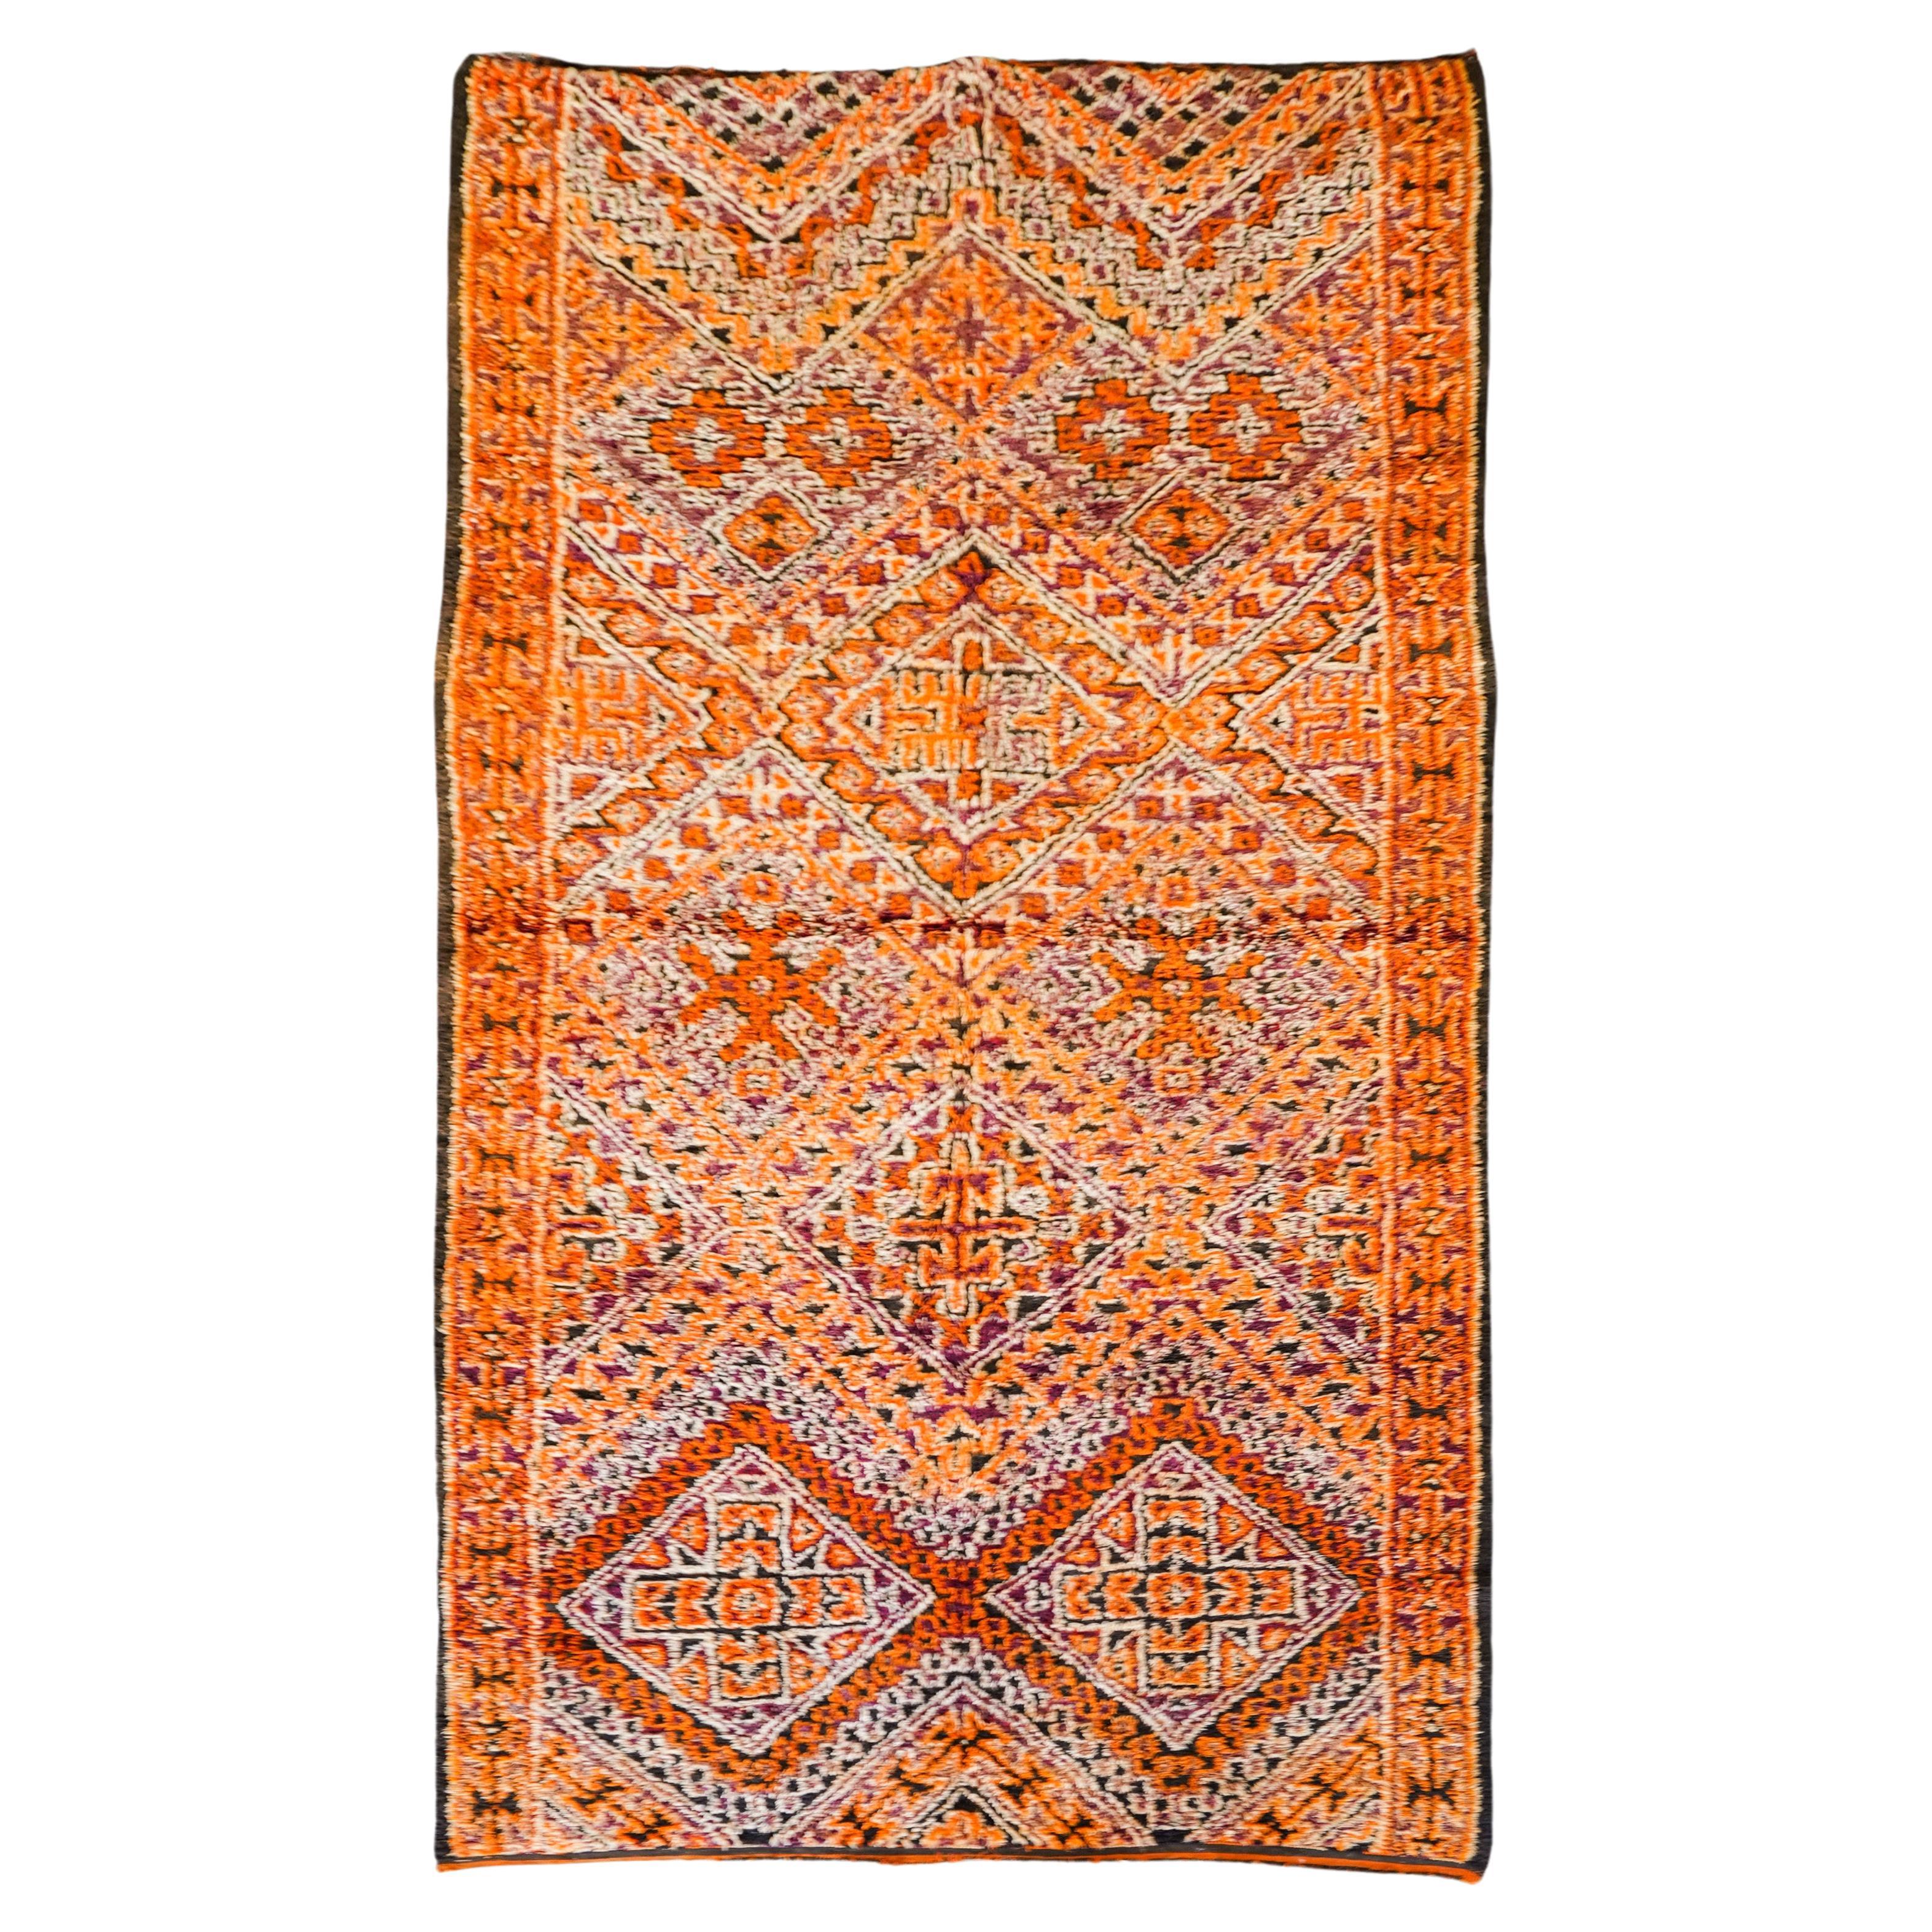 Orangefarbener marokkanischer Vintage-Teppich aus den 70ern  100% Wolle  5.2x11 Ft 160x330 Cm